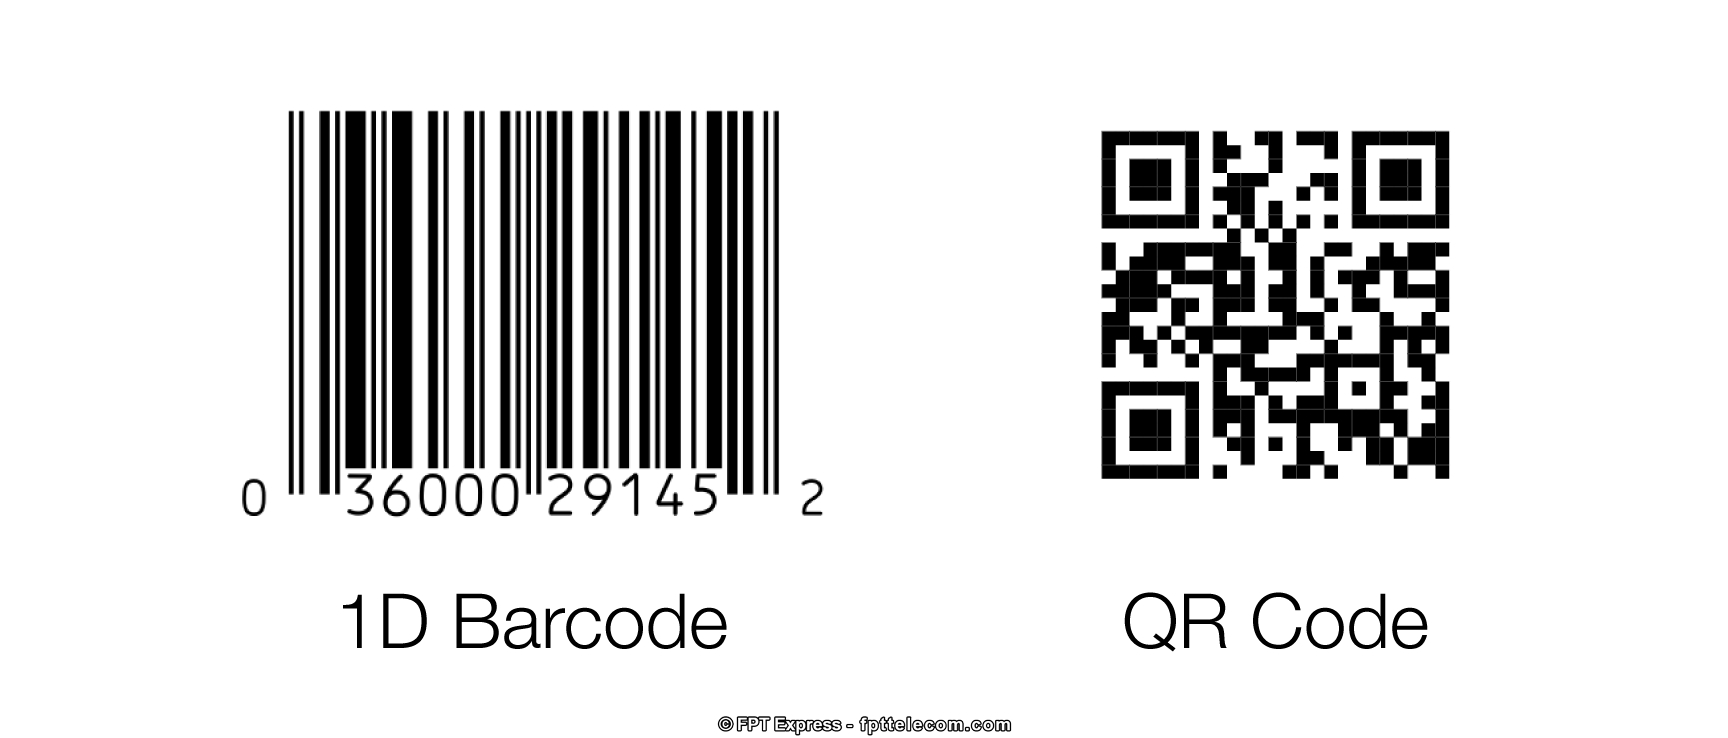 QR Code có nhiều ưu điểm hơn so với mã vạch truyền thống